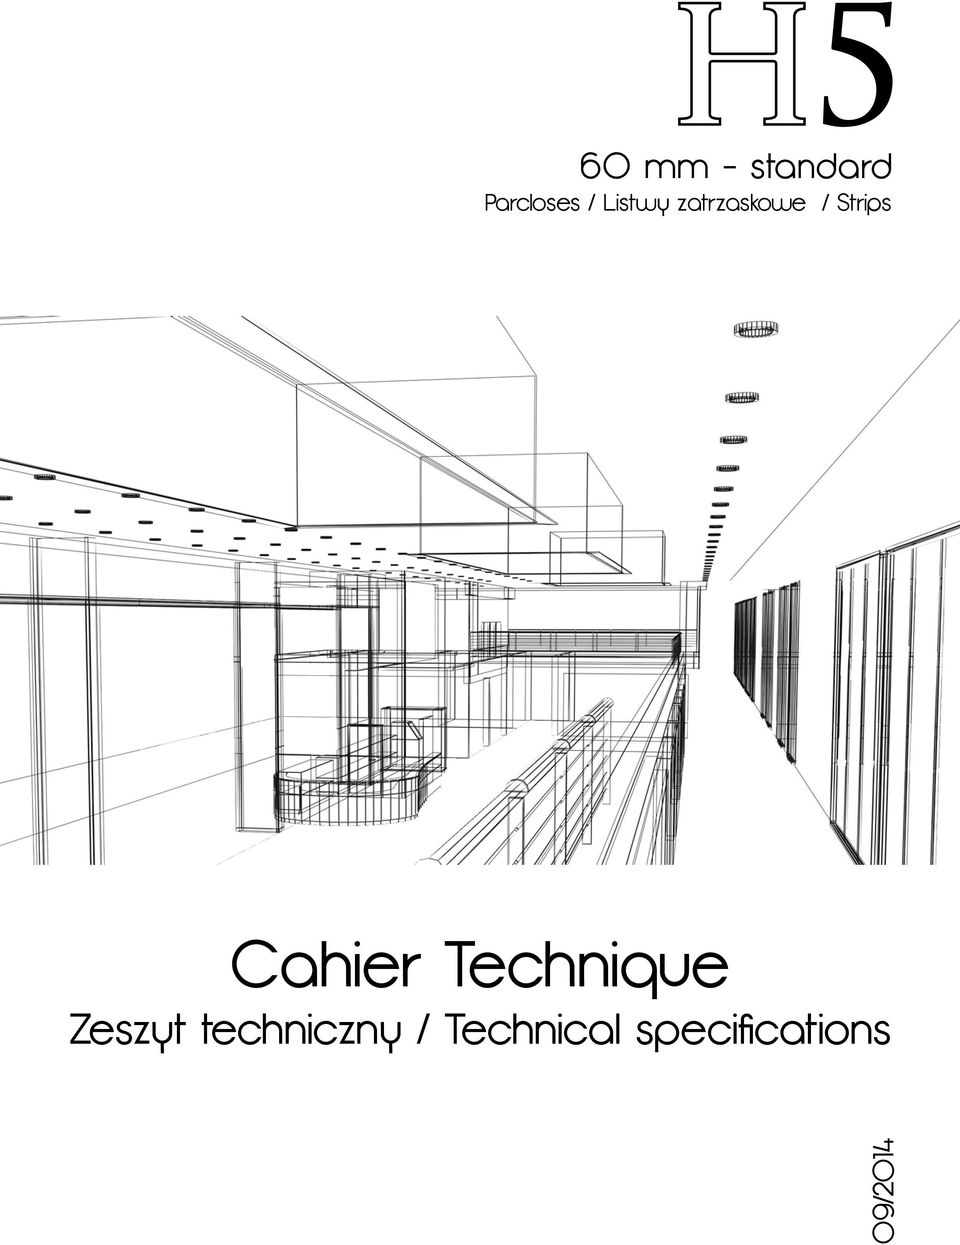 Cahier Technique Zeszyt